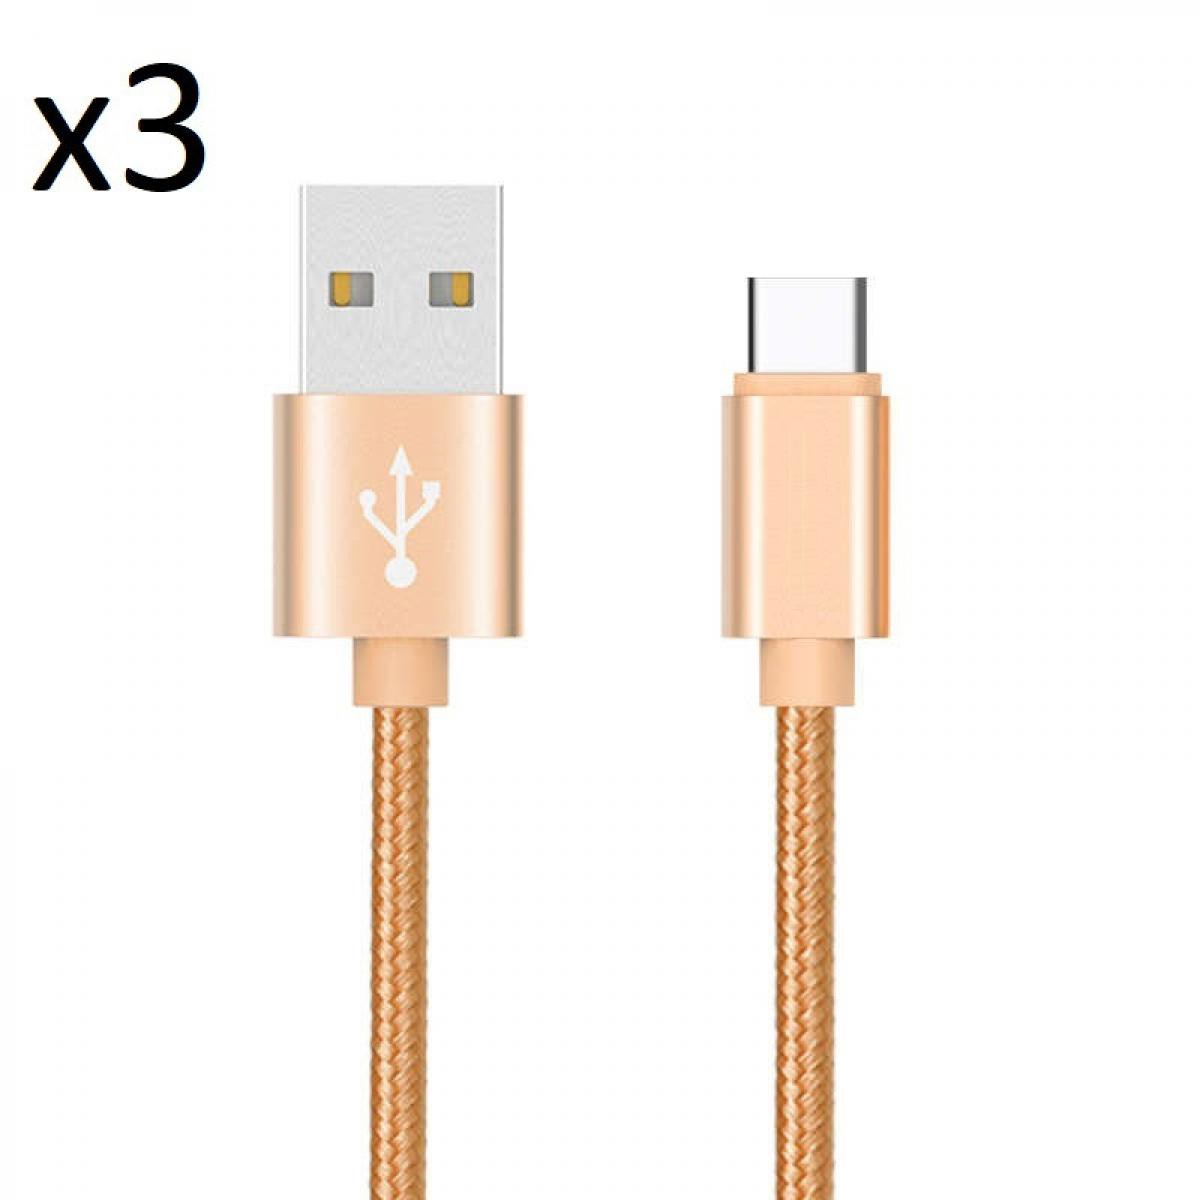 Shot - Pack de 3 Cables Metal Nylon Type C pour XIAOMI Mi 10 Smartphone Android Chargeur (OR) - Chargeur secteur téléphone